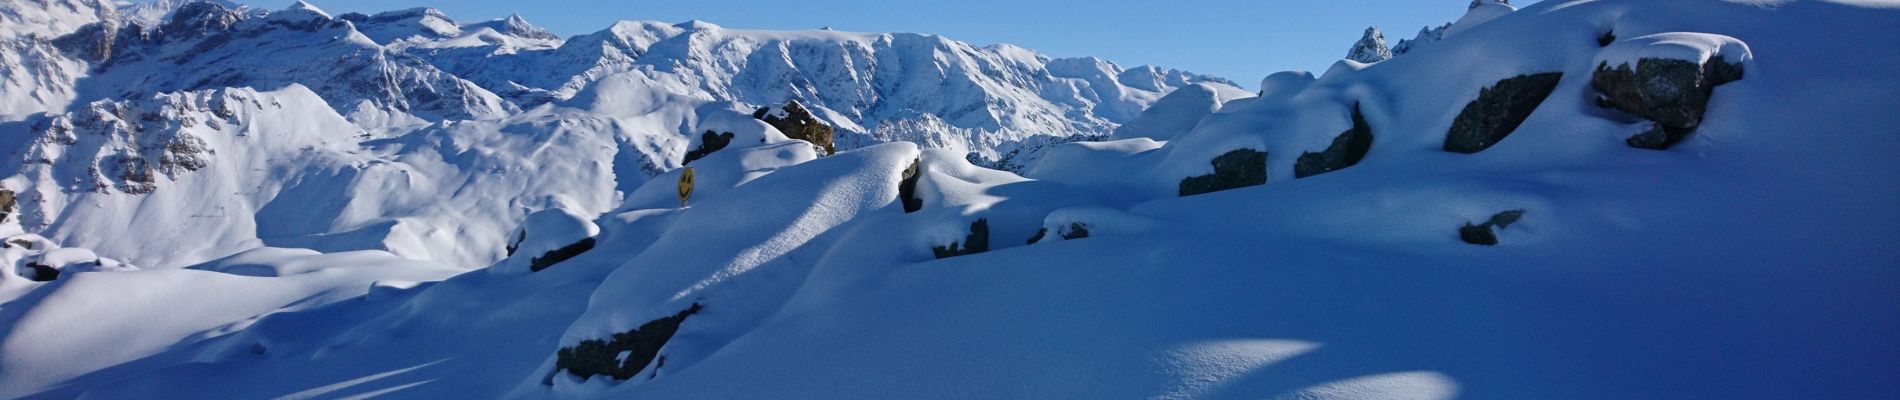 Tour Skiwanderen Courchevel - creux noir - Photo